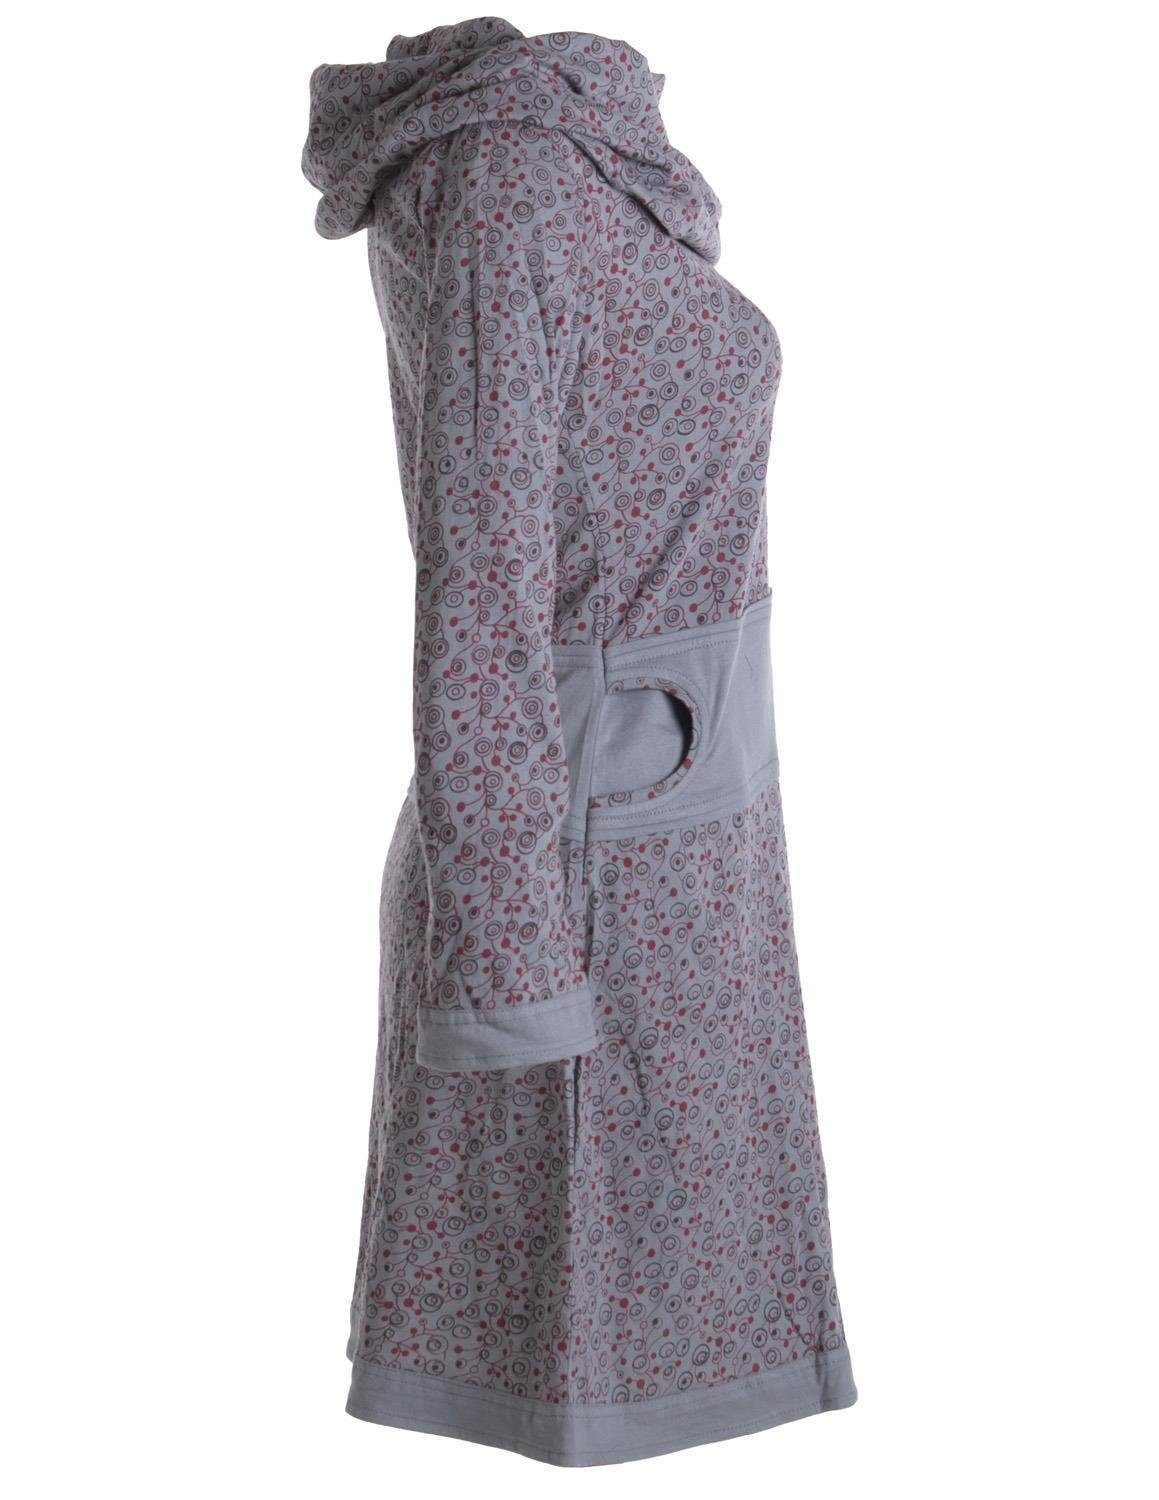 Vishes Jerseykleid Bedrucktes Boho, Schalkragen Baumwolle mit Kleid Style Hippie grau Goa, Ethno, aus